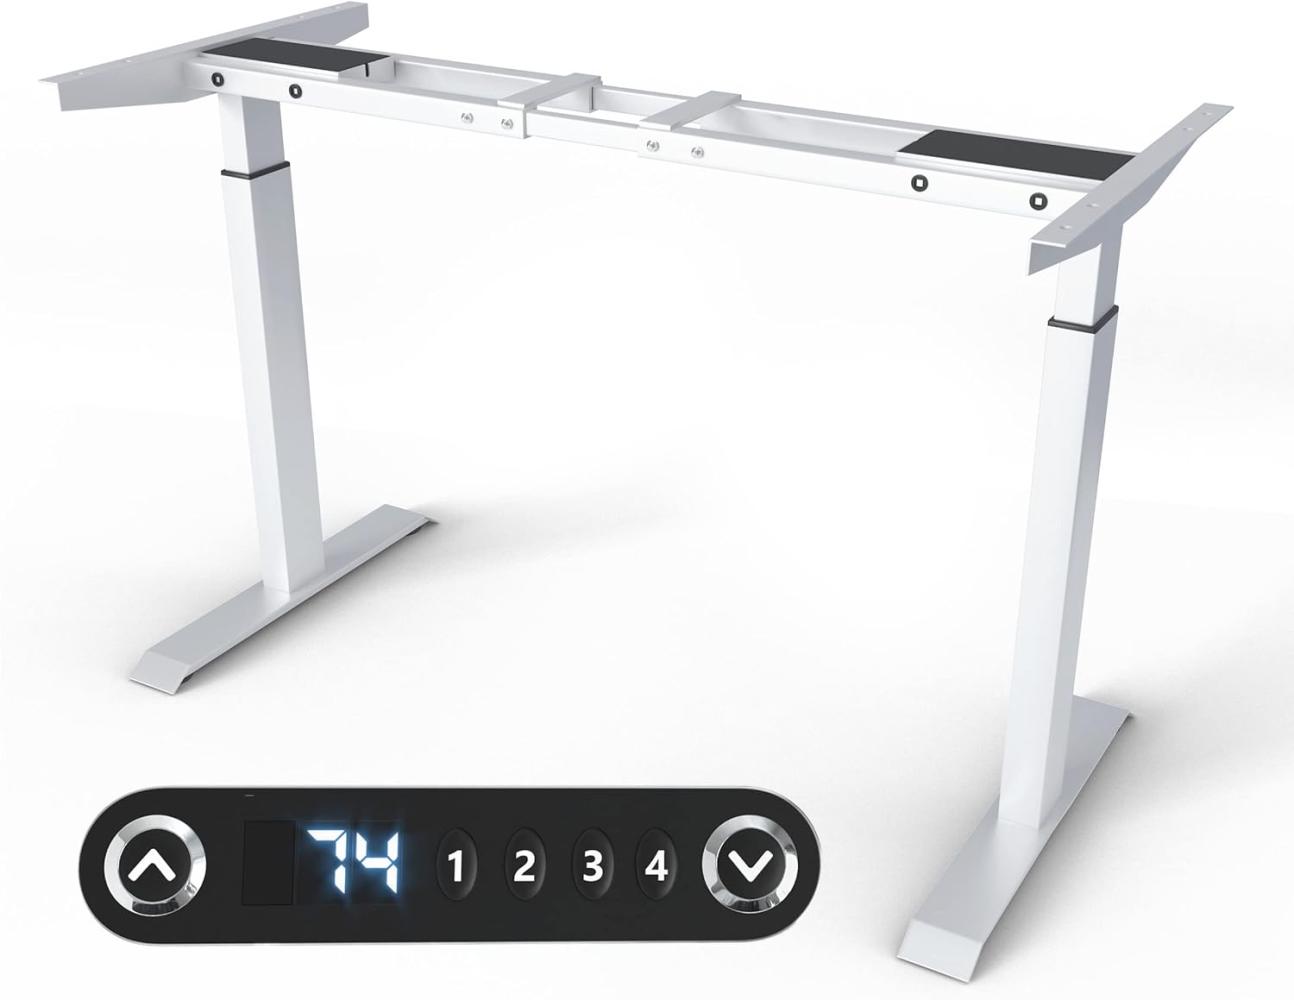 Höhenverstellbarer Schreibtischrahmen - Tischgestell - Bürotisch Rahmen mit Dual Motor Elektrisch Höhenverstellbar mit Touchscreen & Memoryfunktion Gestell (Weiß) Bild 1